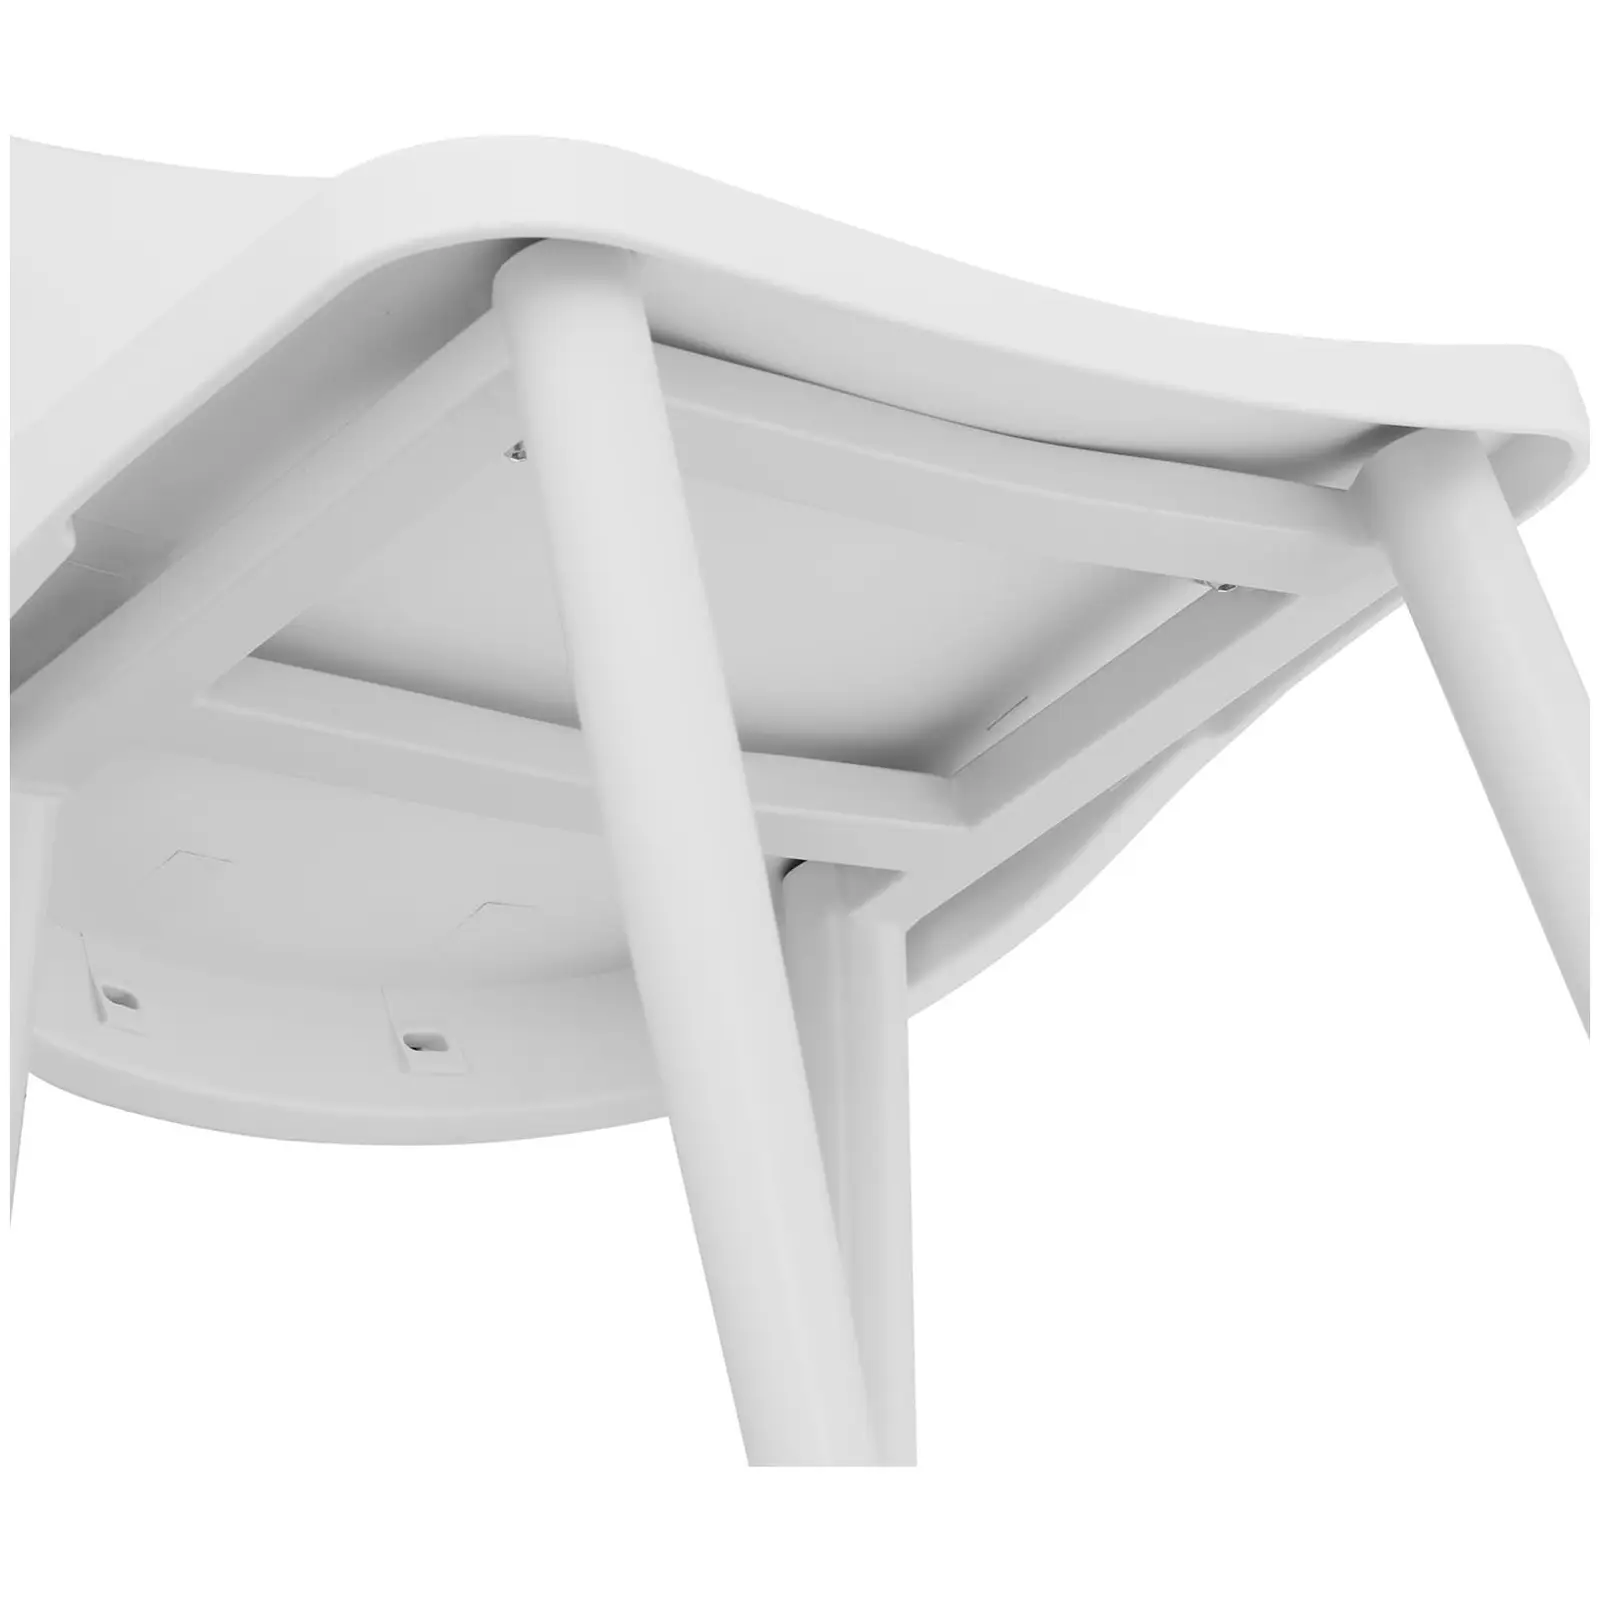 Silla - set de 2 - hasta 150 kg - asiento de 56 x 46,5 cm - negra/blanca